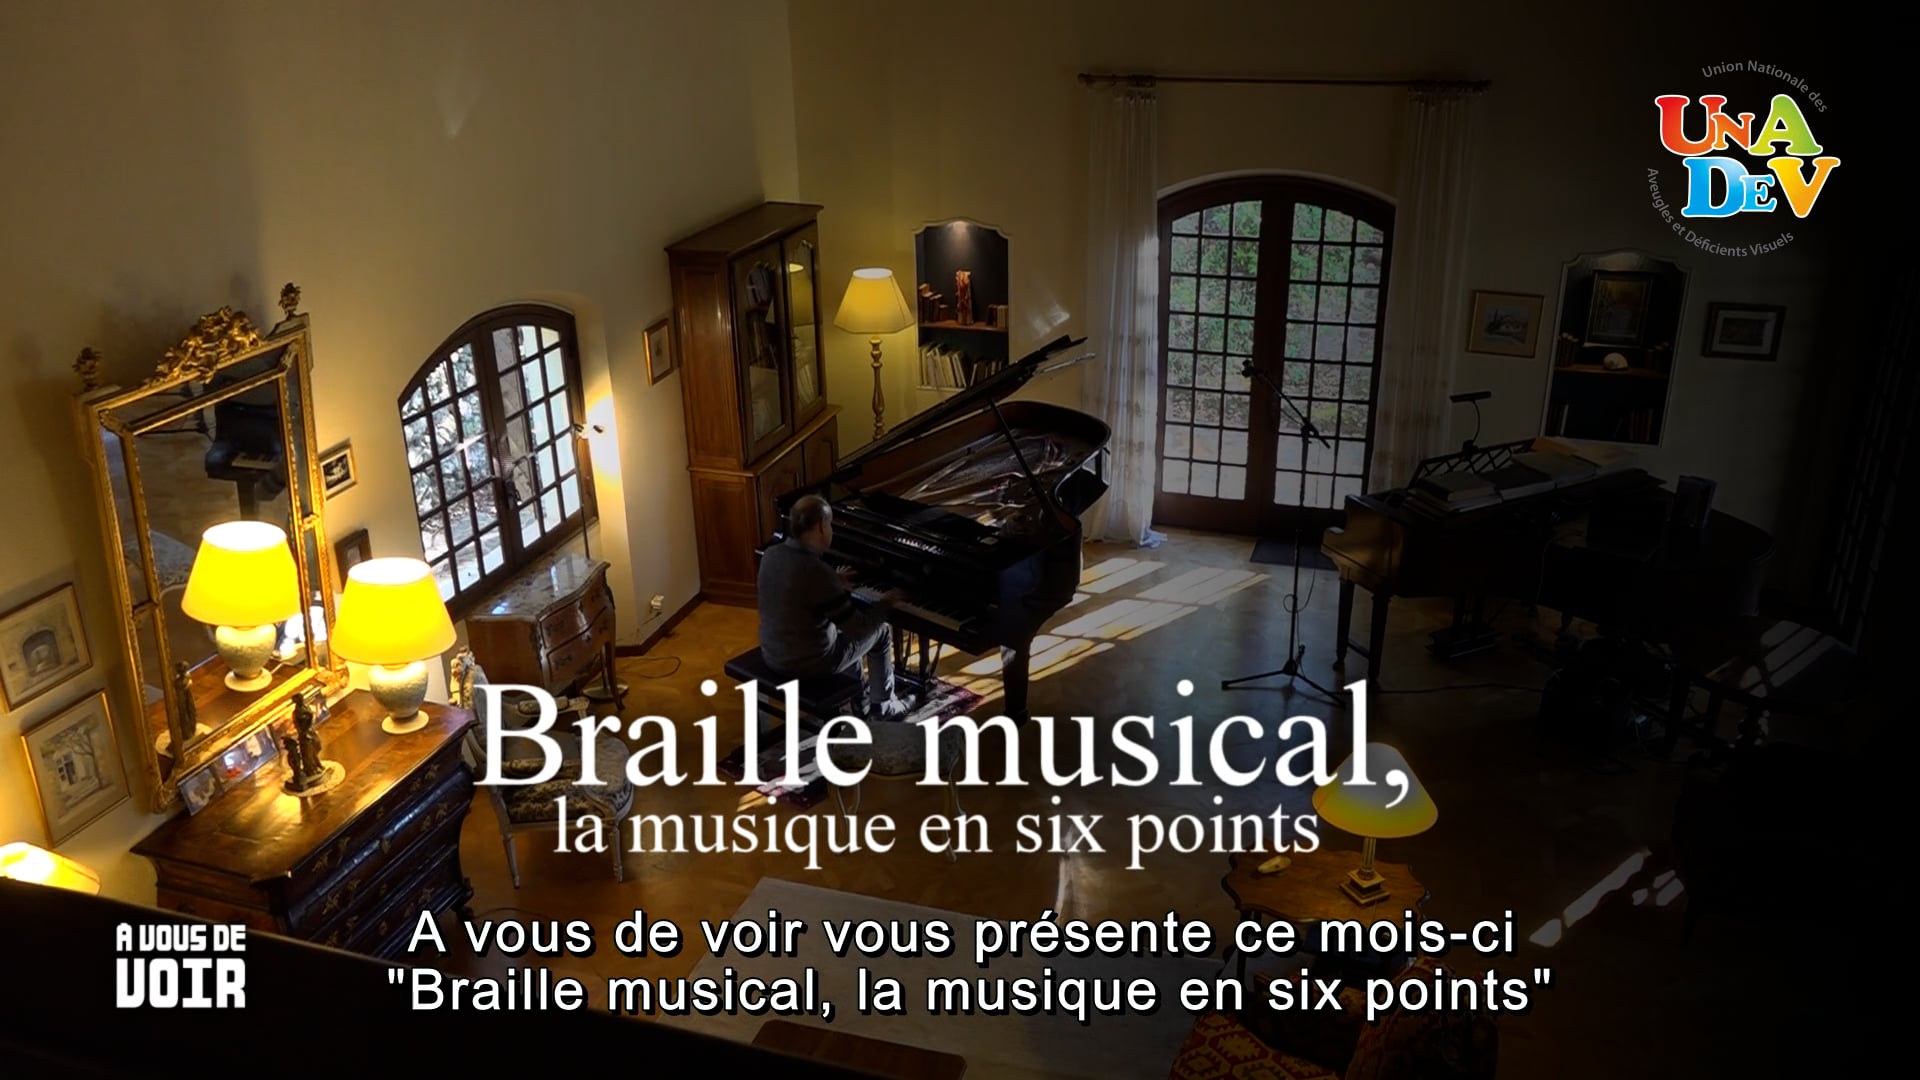 Vidéo ACTRICE VOIX DOCUMENTAIRE-France 5 teaser "Le Braille musical"- Collection A Vous de voir